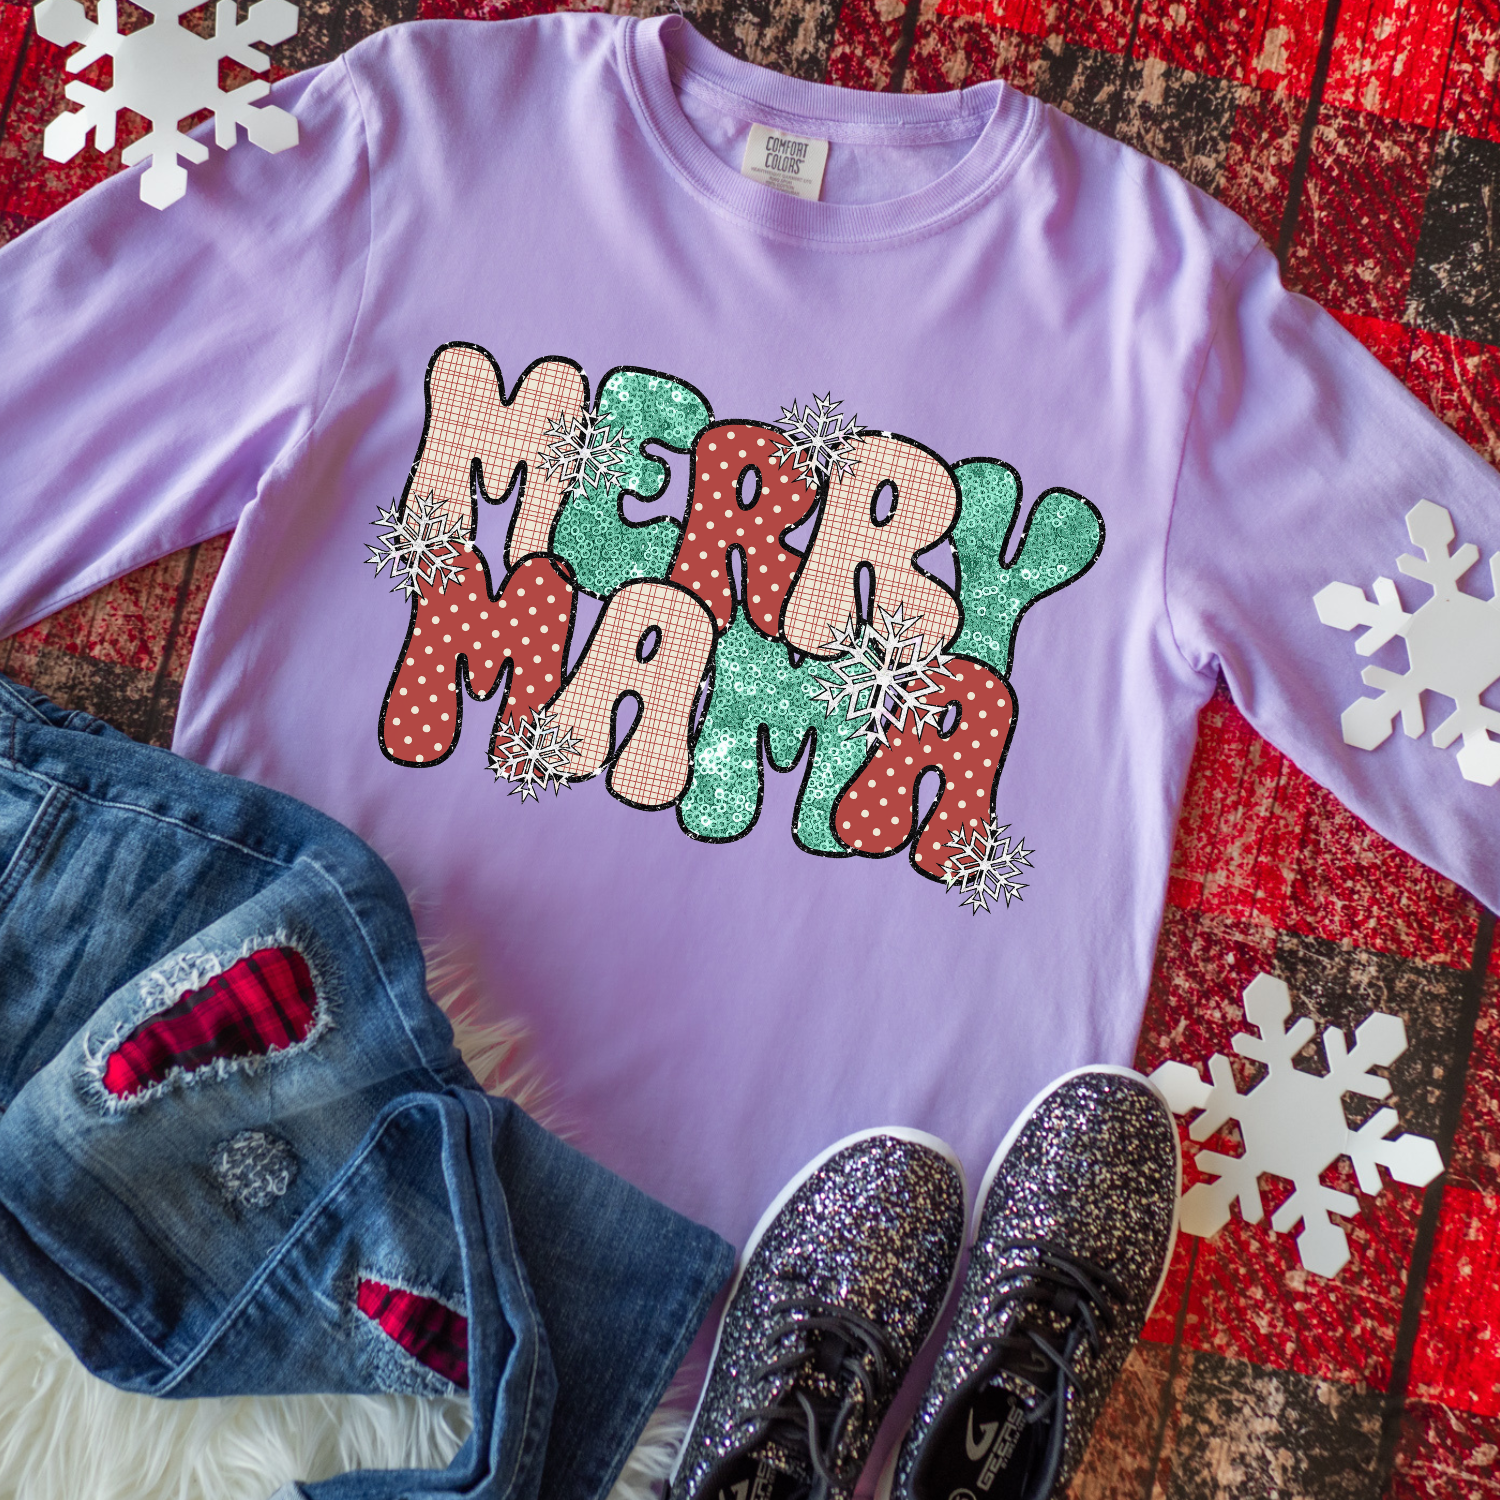 Merry Mama Shirt